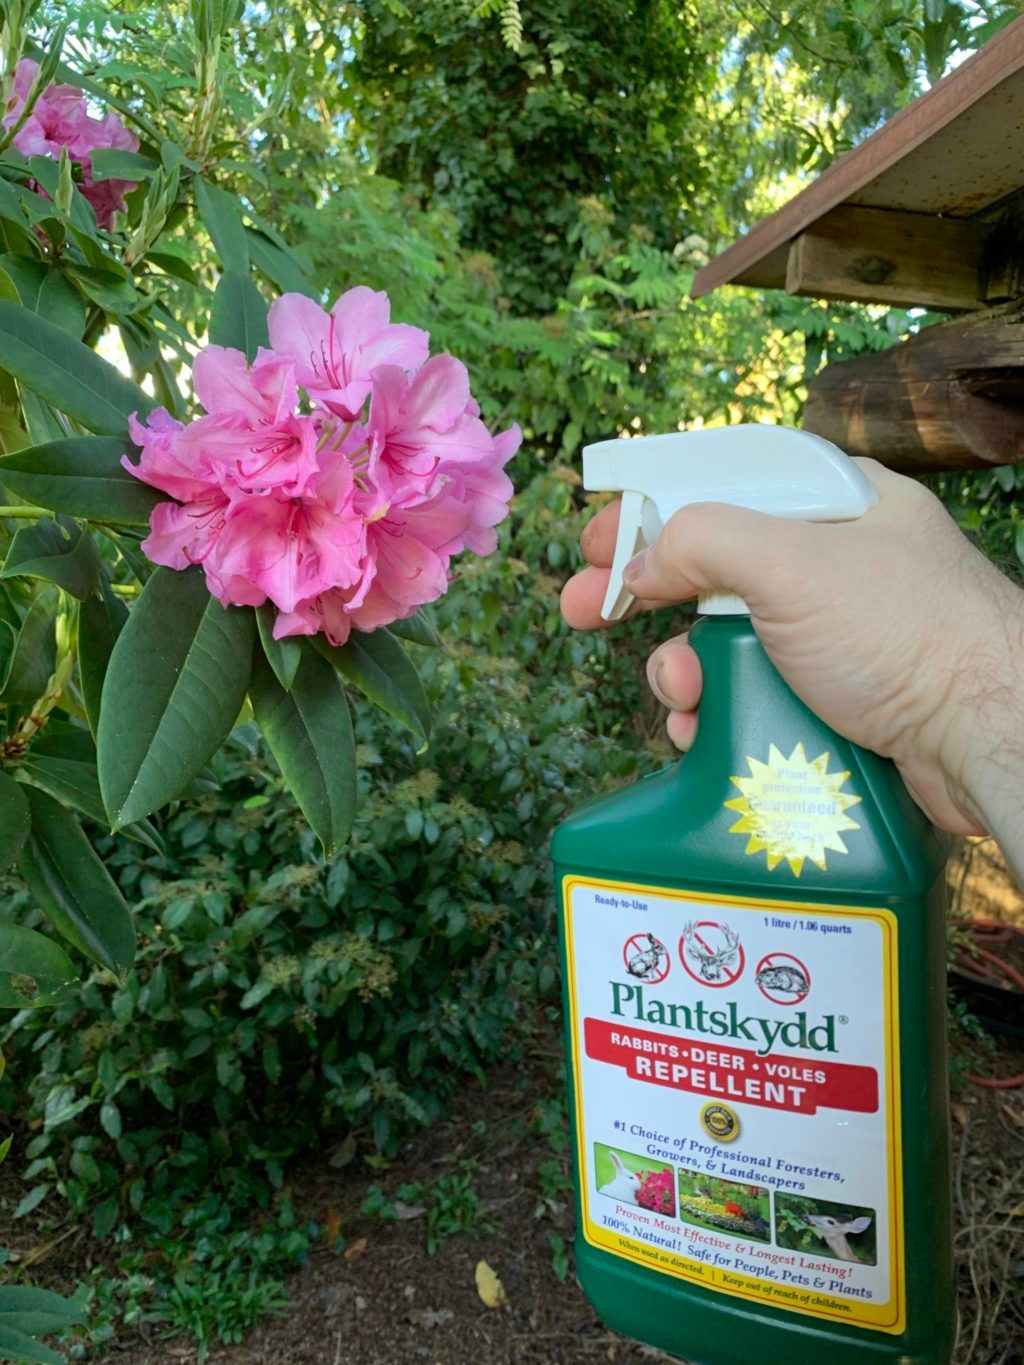 Plantskydd-rhodo-spray